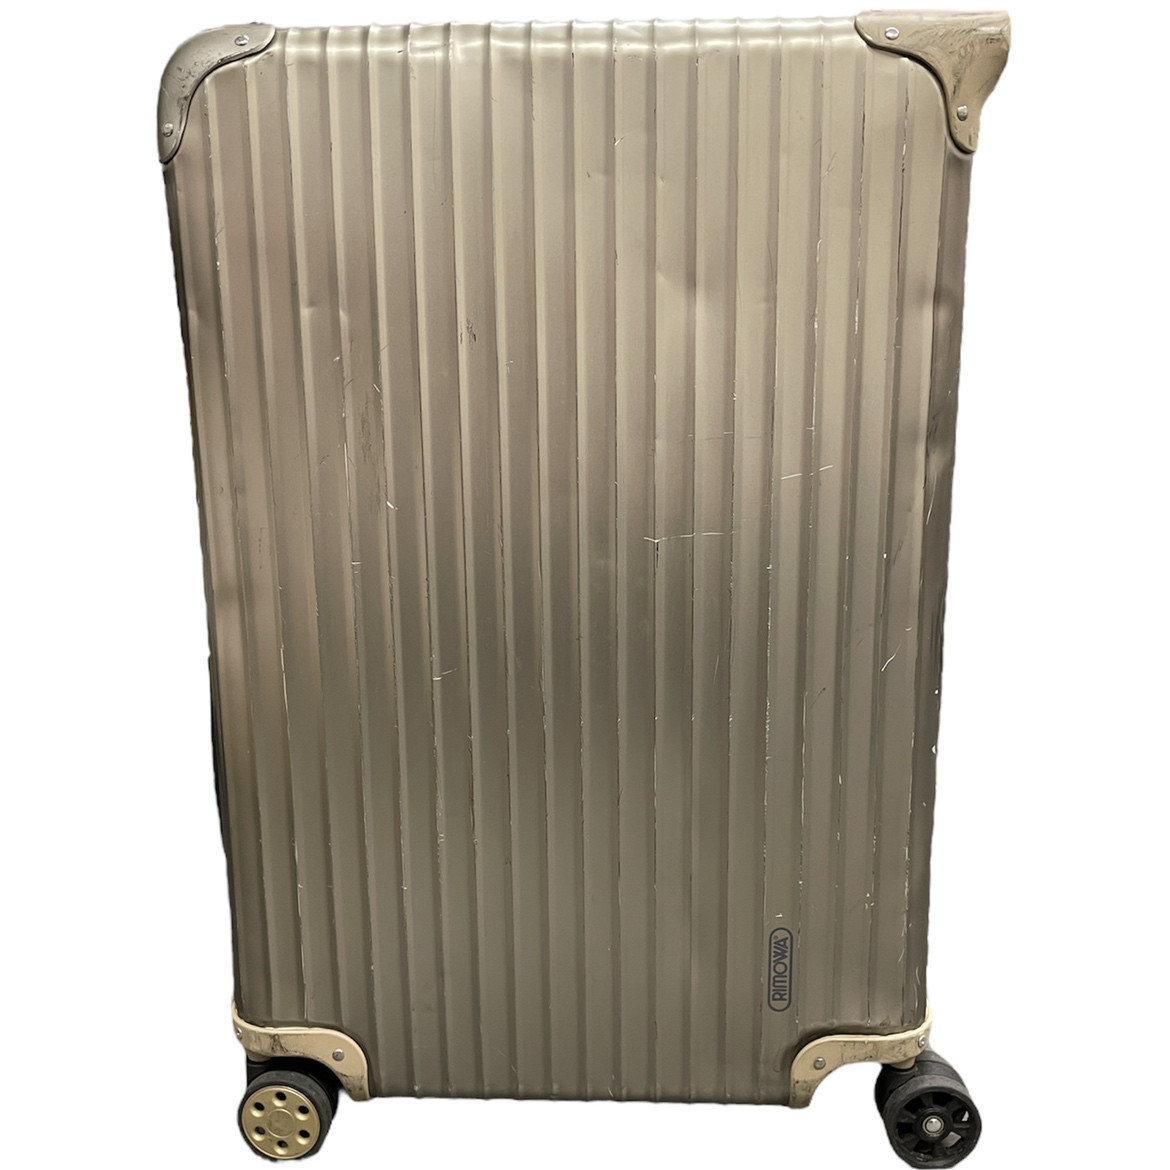 リモワの945.70 トパーズチタニウム 82L 4輪スーツケースの買取実績です。